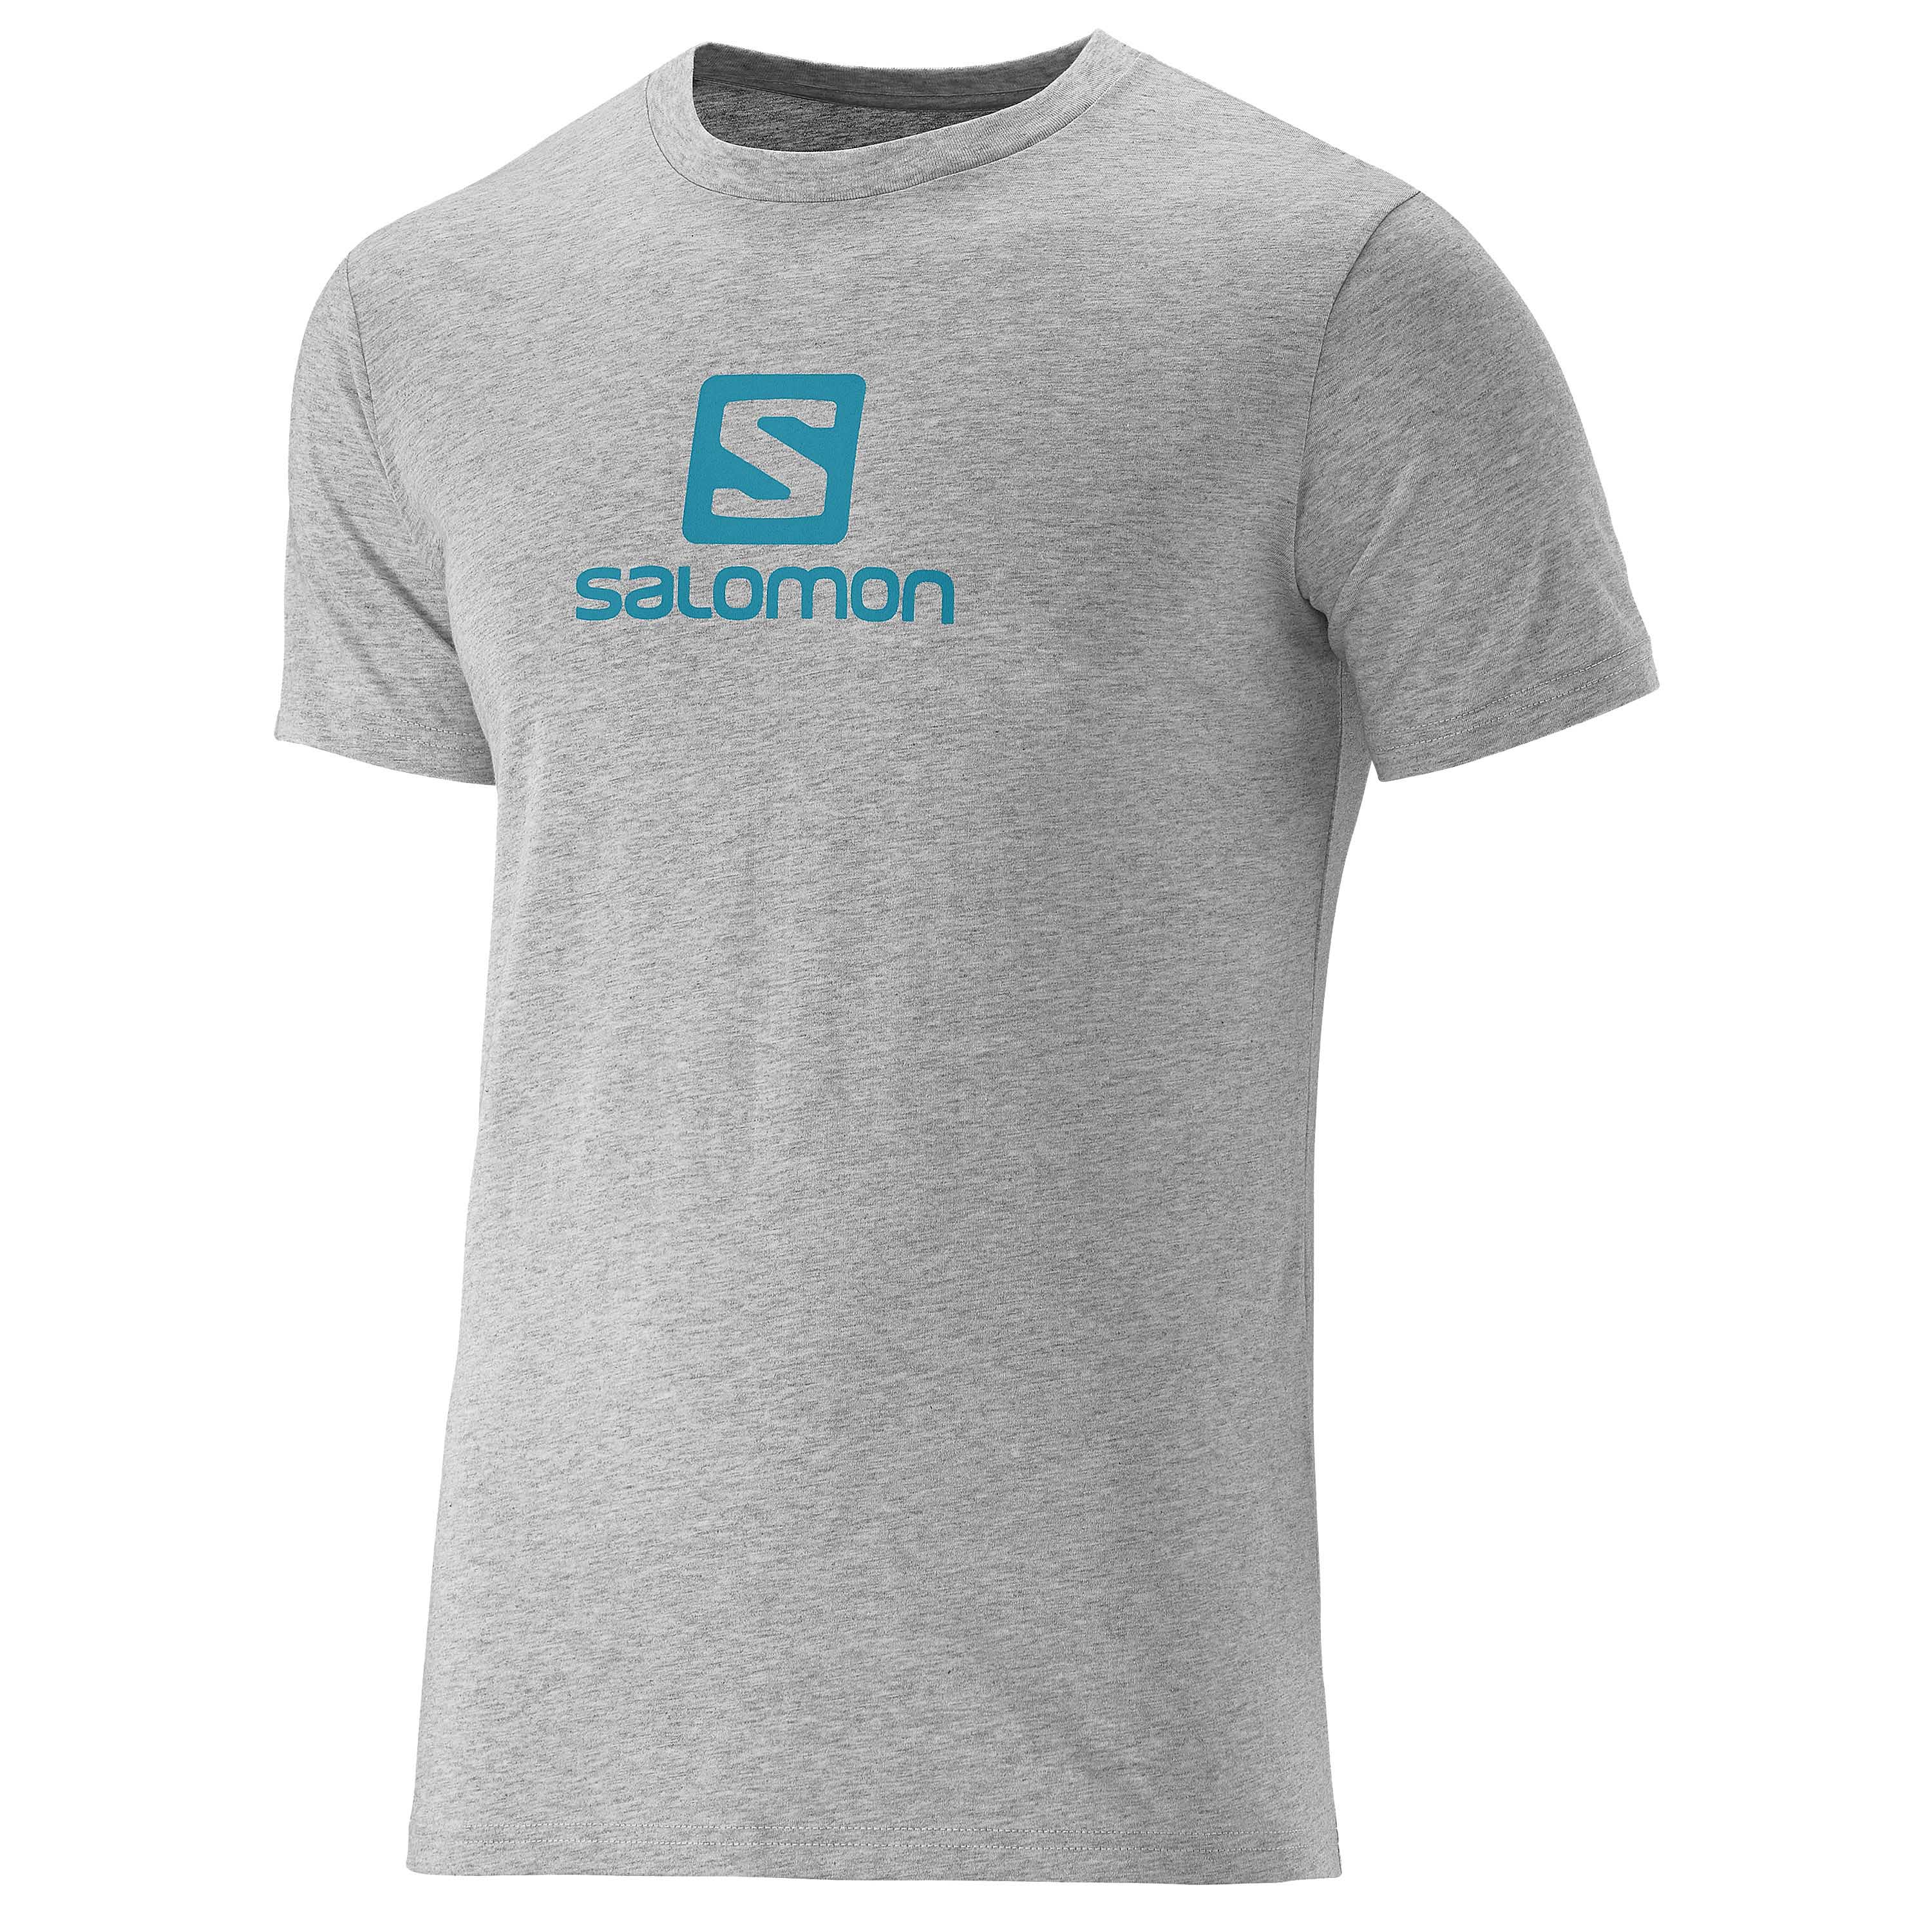 T Shirt Salomon Cotton Tee Gray T Shirt Salomon Cotton Tee Gray 